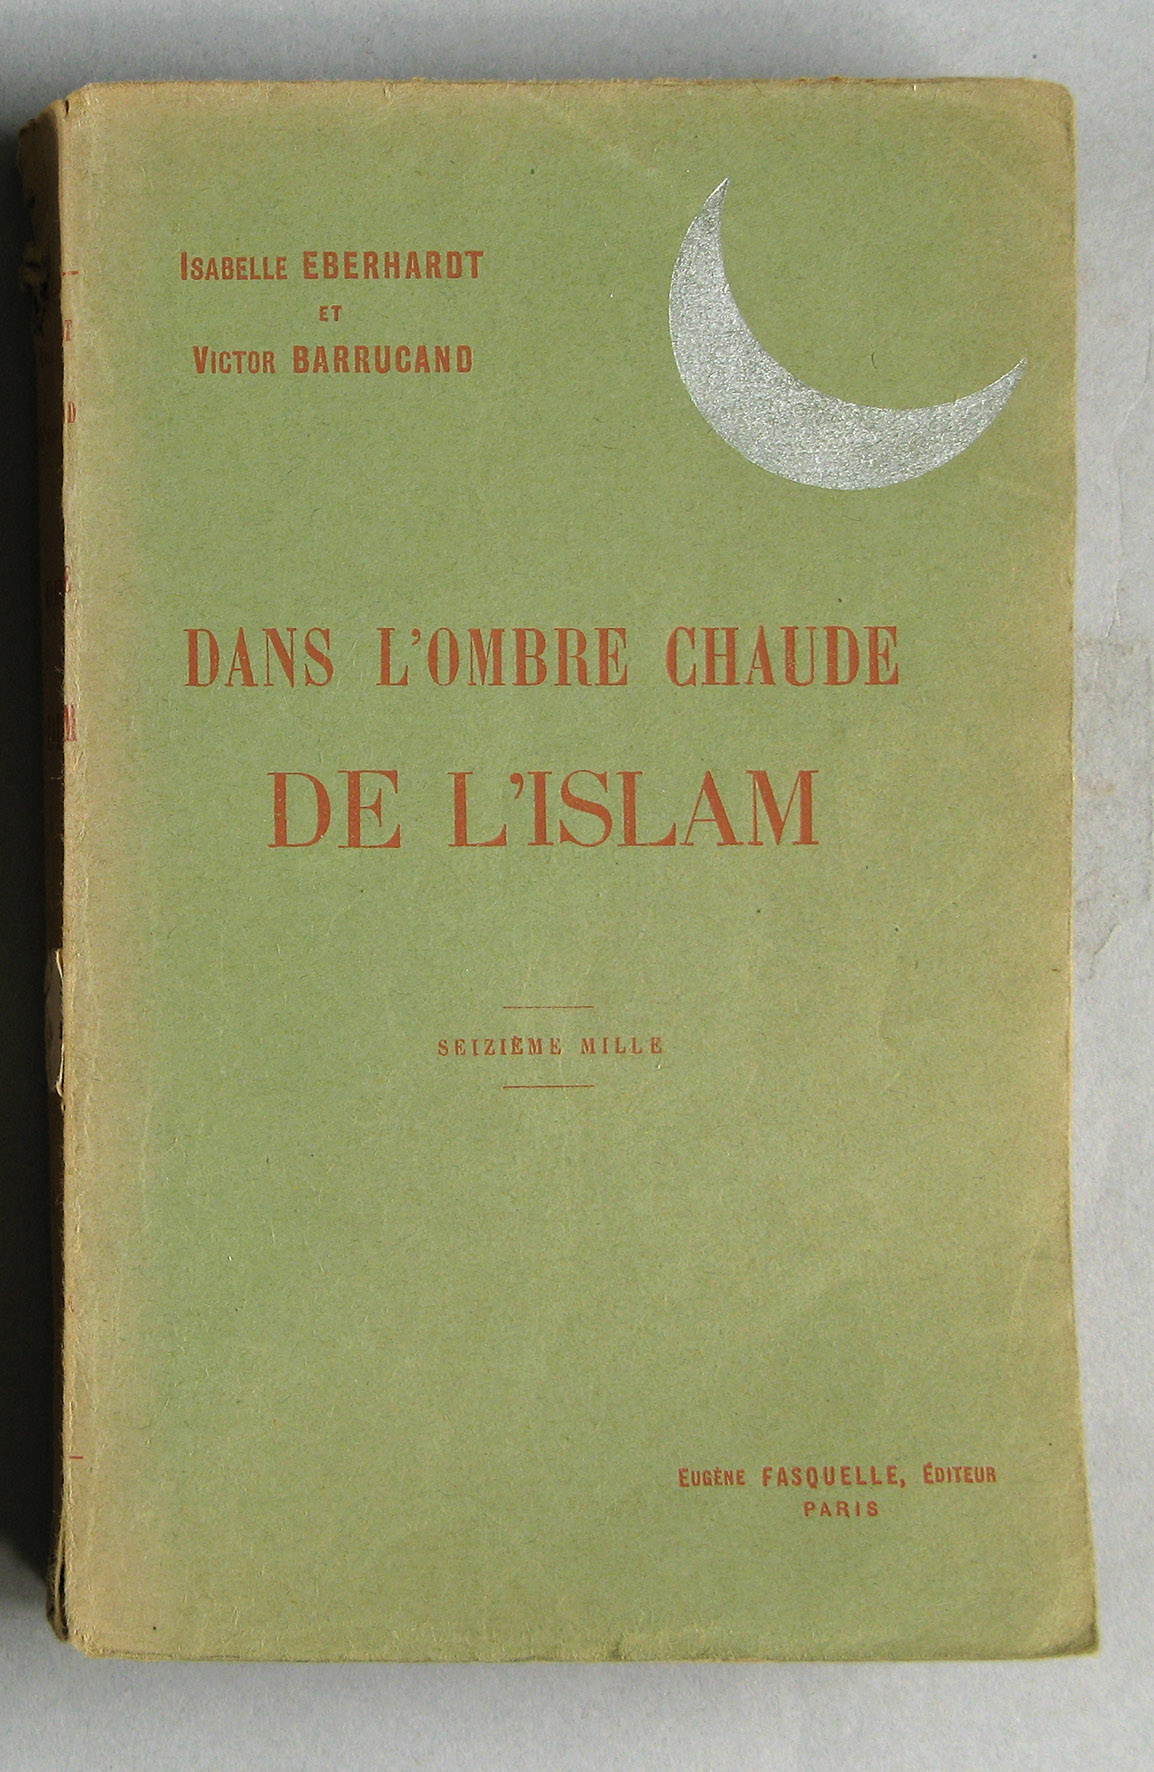 EBERHARDT Isabelle, BARRUCAND Victor, Dans l’ombre chaude de l’Islam, Paris, Charpentier et Fasquelle, 1926. BIB AOM 52639